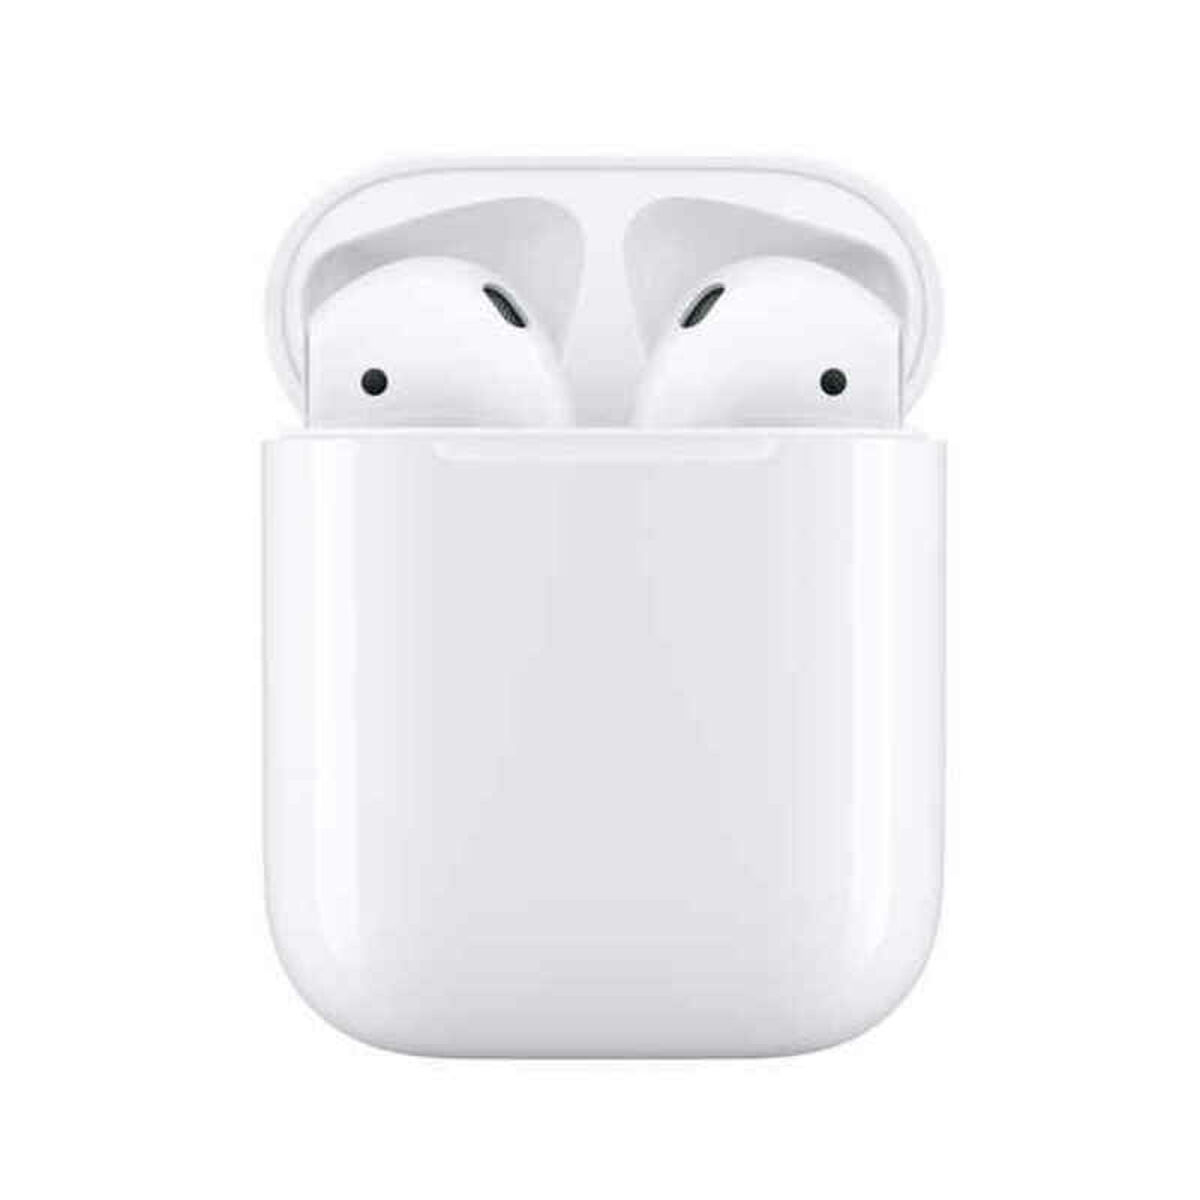 Auriculares Con Micrófono Apple Airpods - blanco - 